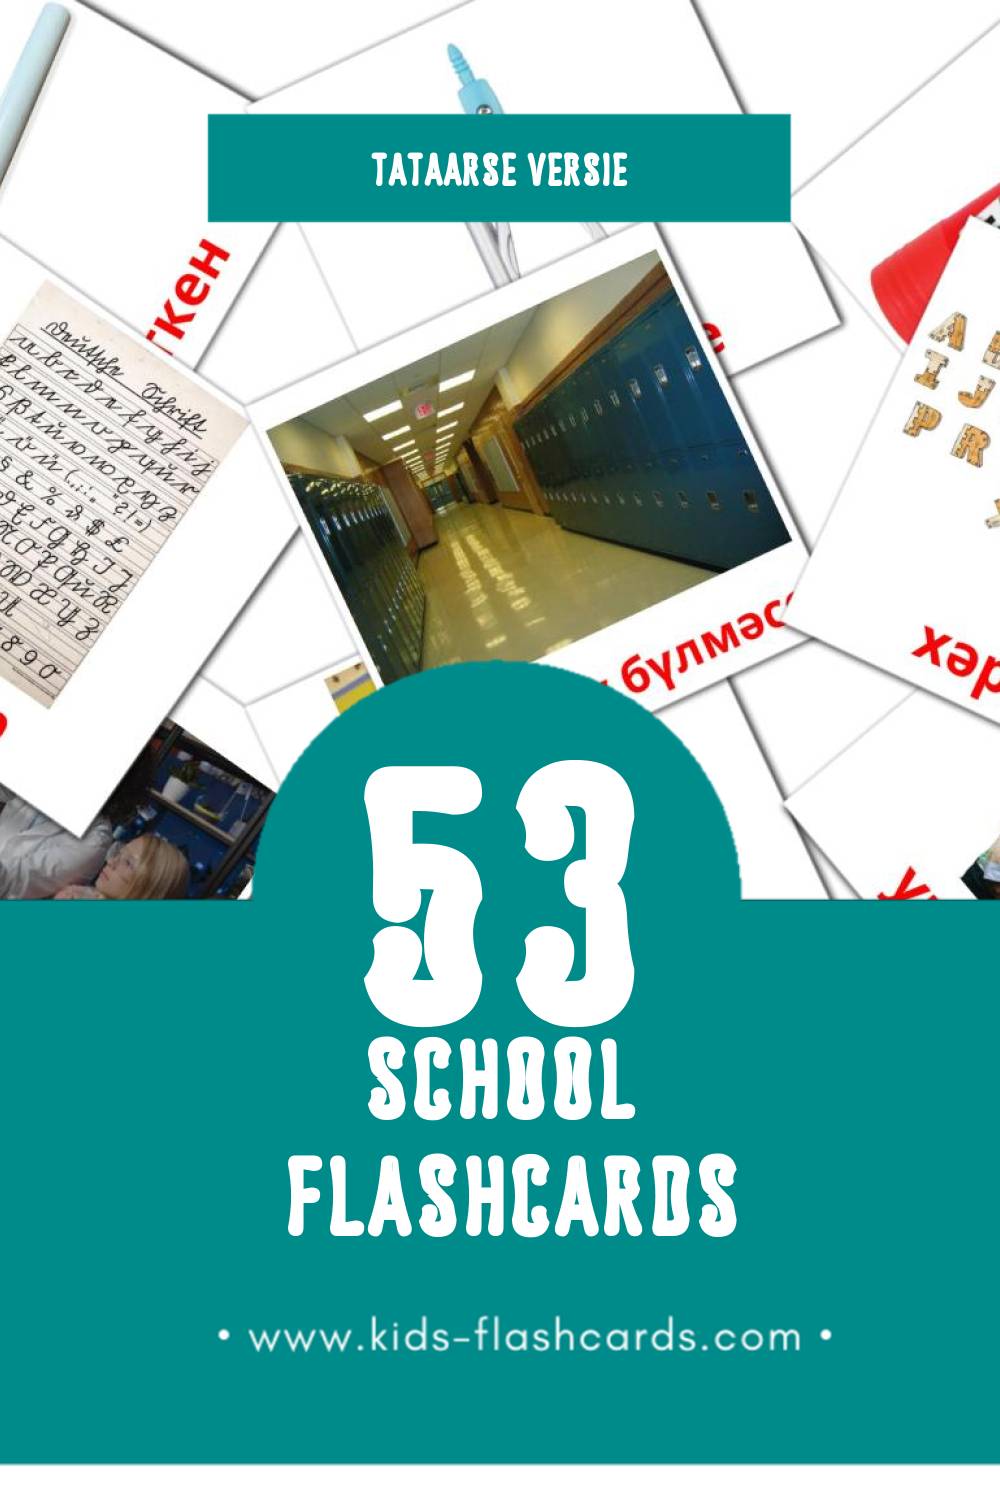 Visuele Мәктәп Flashcards voor Kleuters (53 kaarten in het Tataars)